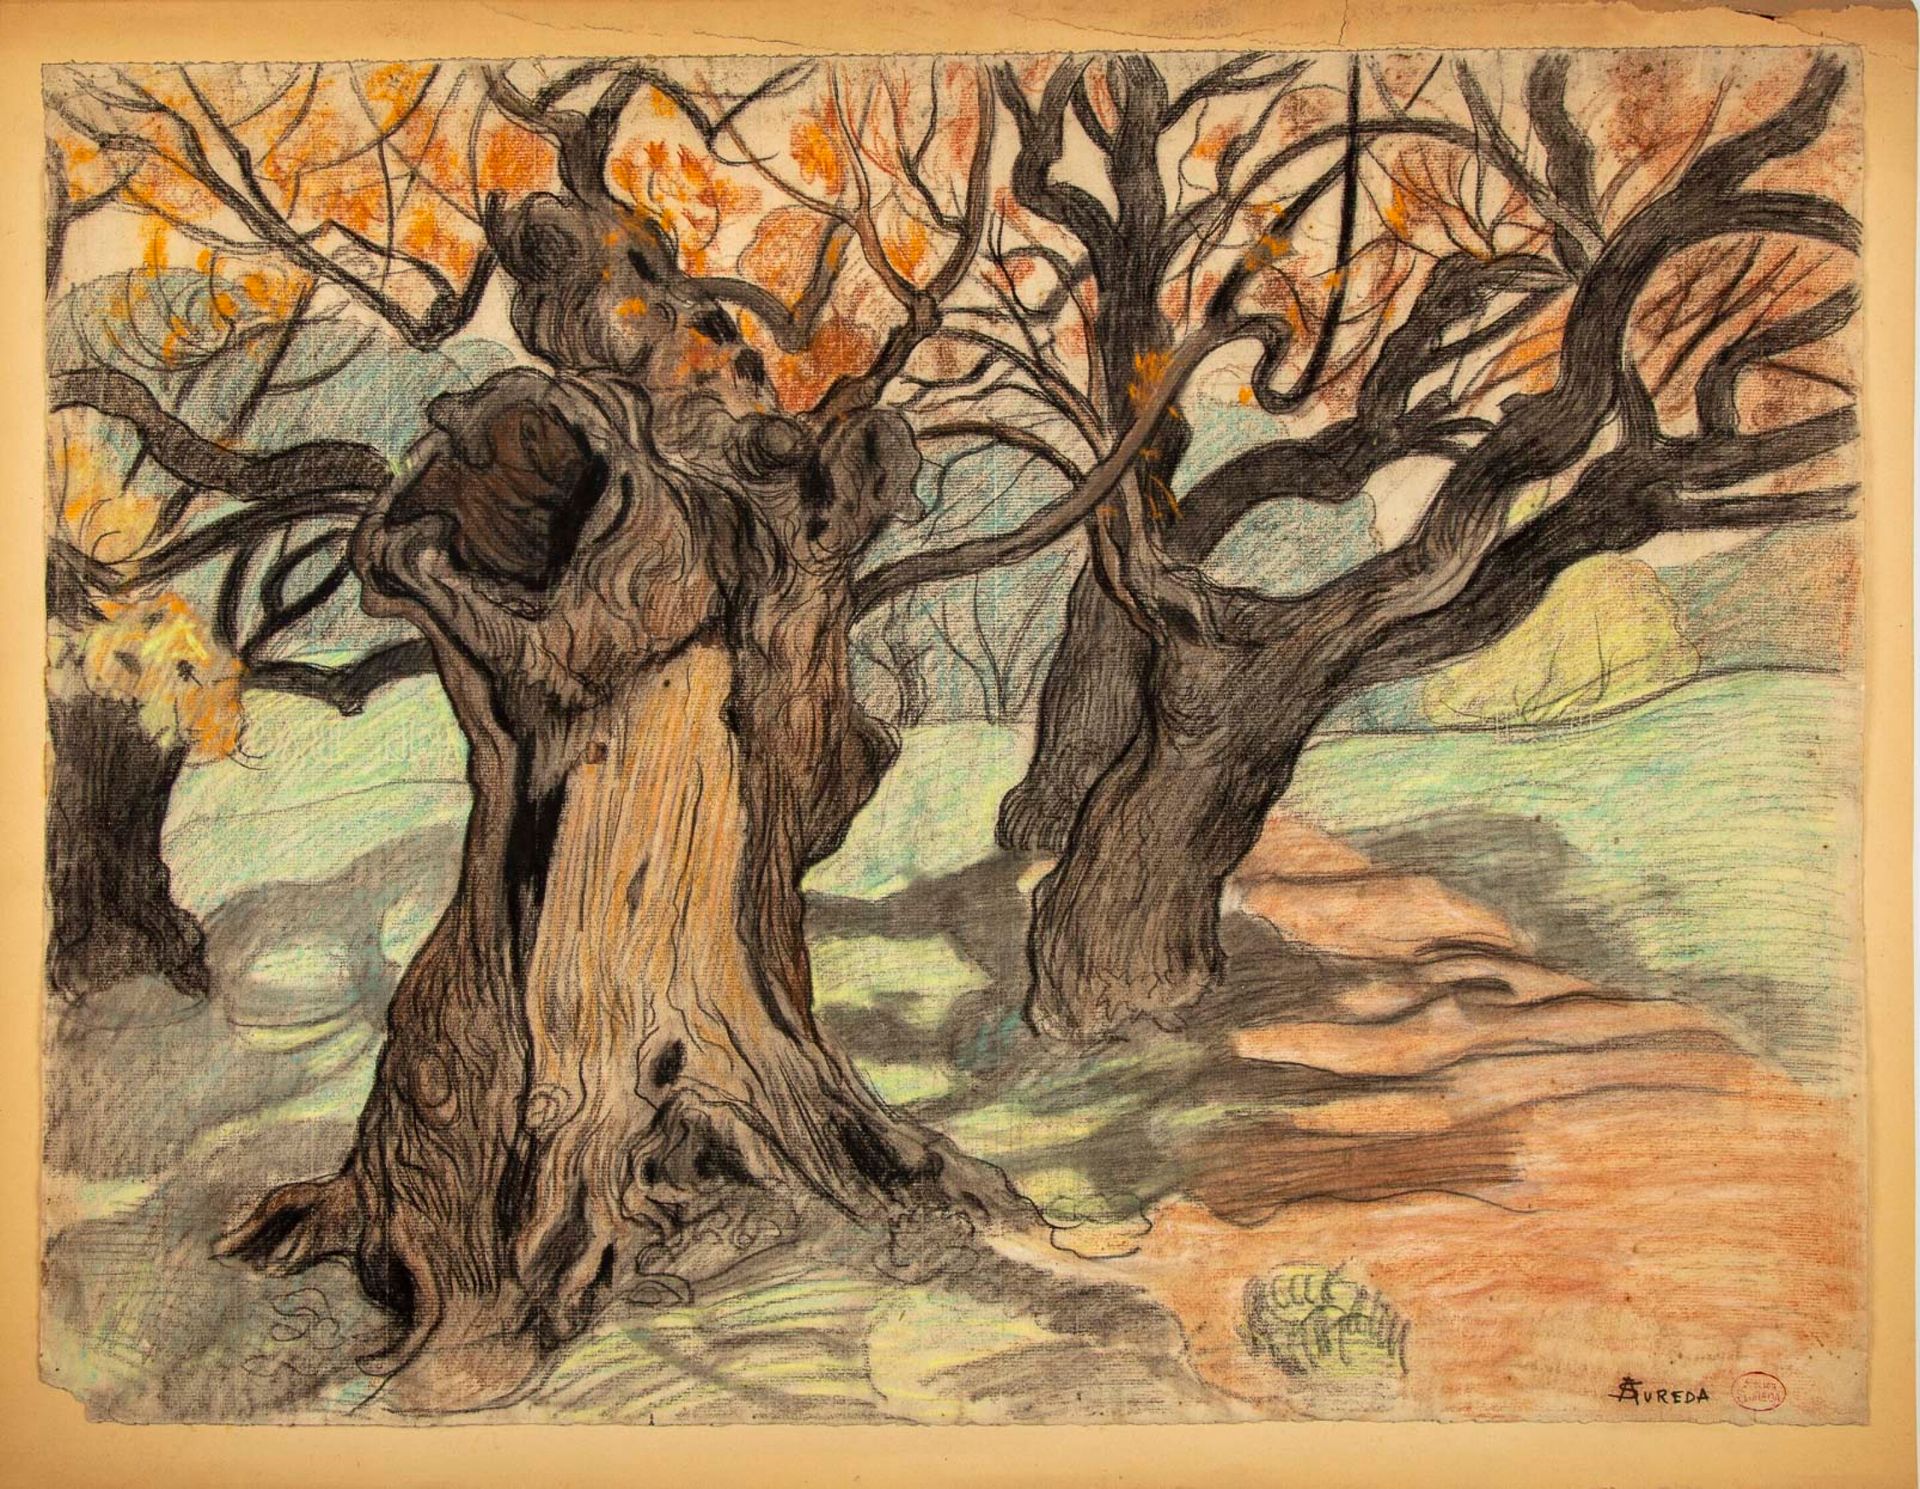 SUREDA 安德烈-苏雷达(1872-1930)

景观与树木

纸上炭笔和粉笔画，右下角有签名和印章

47 x 63 cm